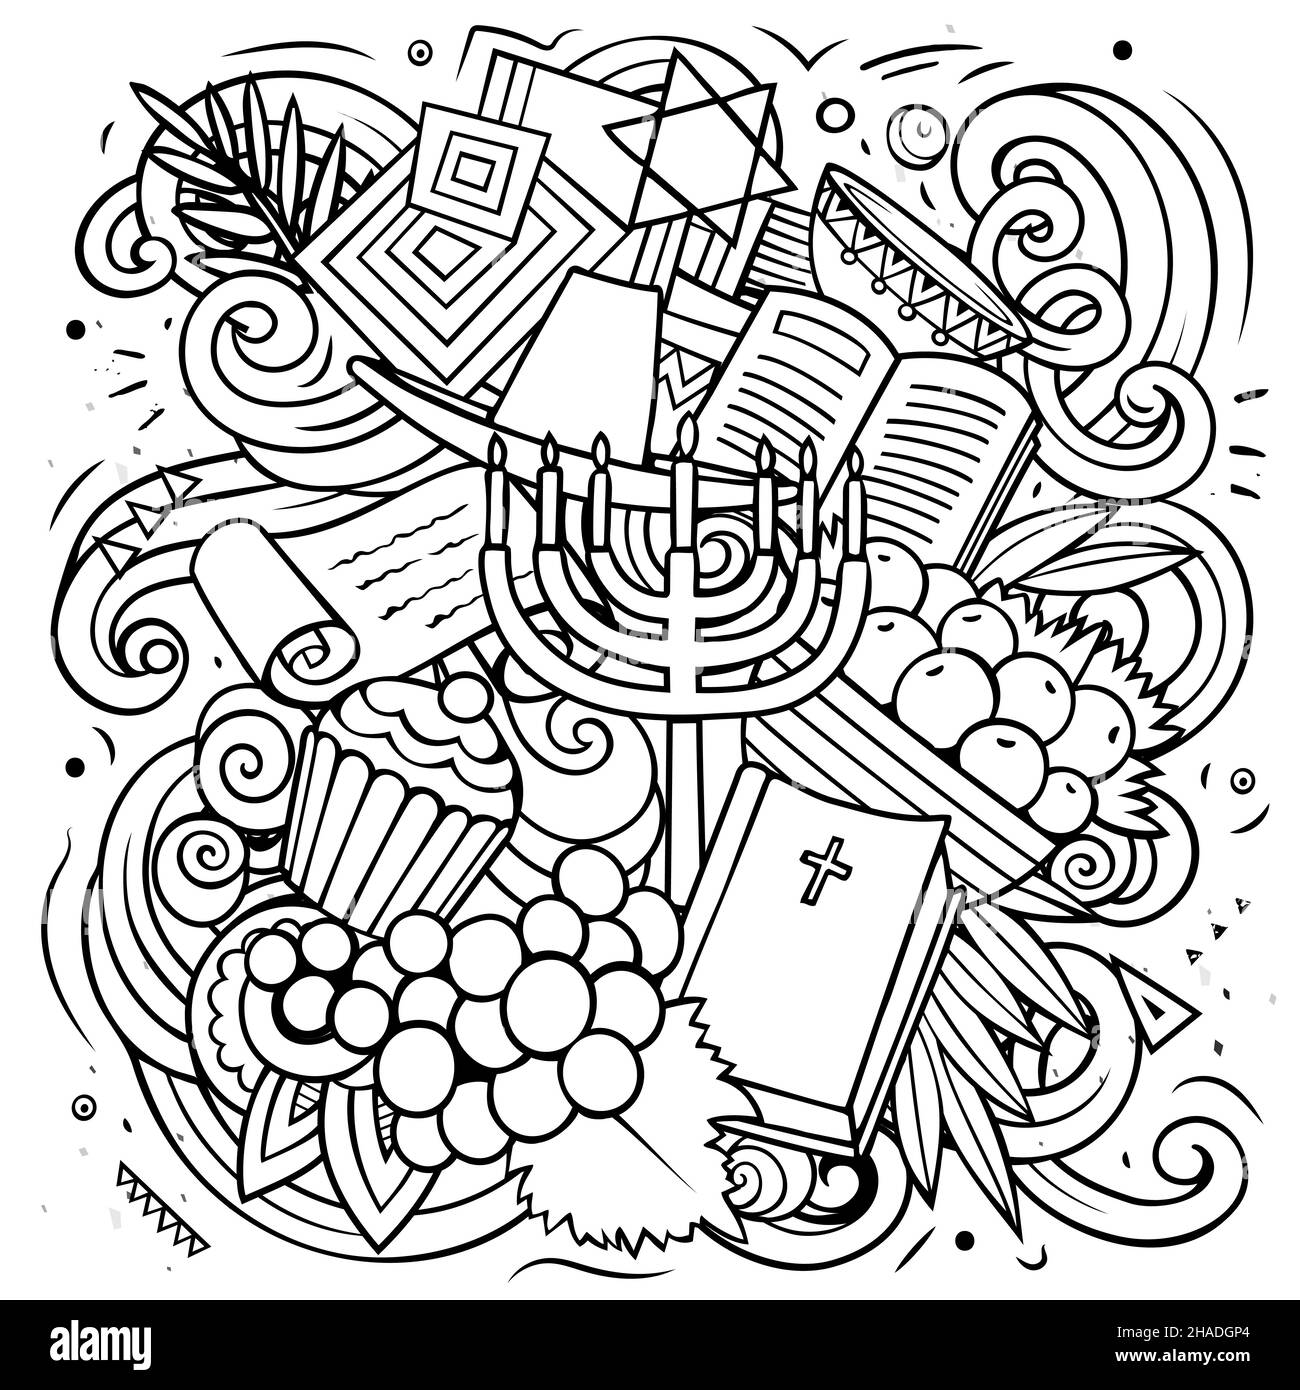 Israele cartoon vettore Doodle illustrazione. Line art composizione dettagliata con molti oggetti e simboli israeliani. Illustrazione Vettoriale